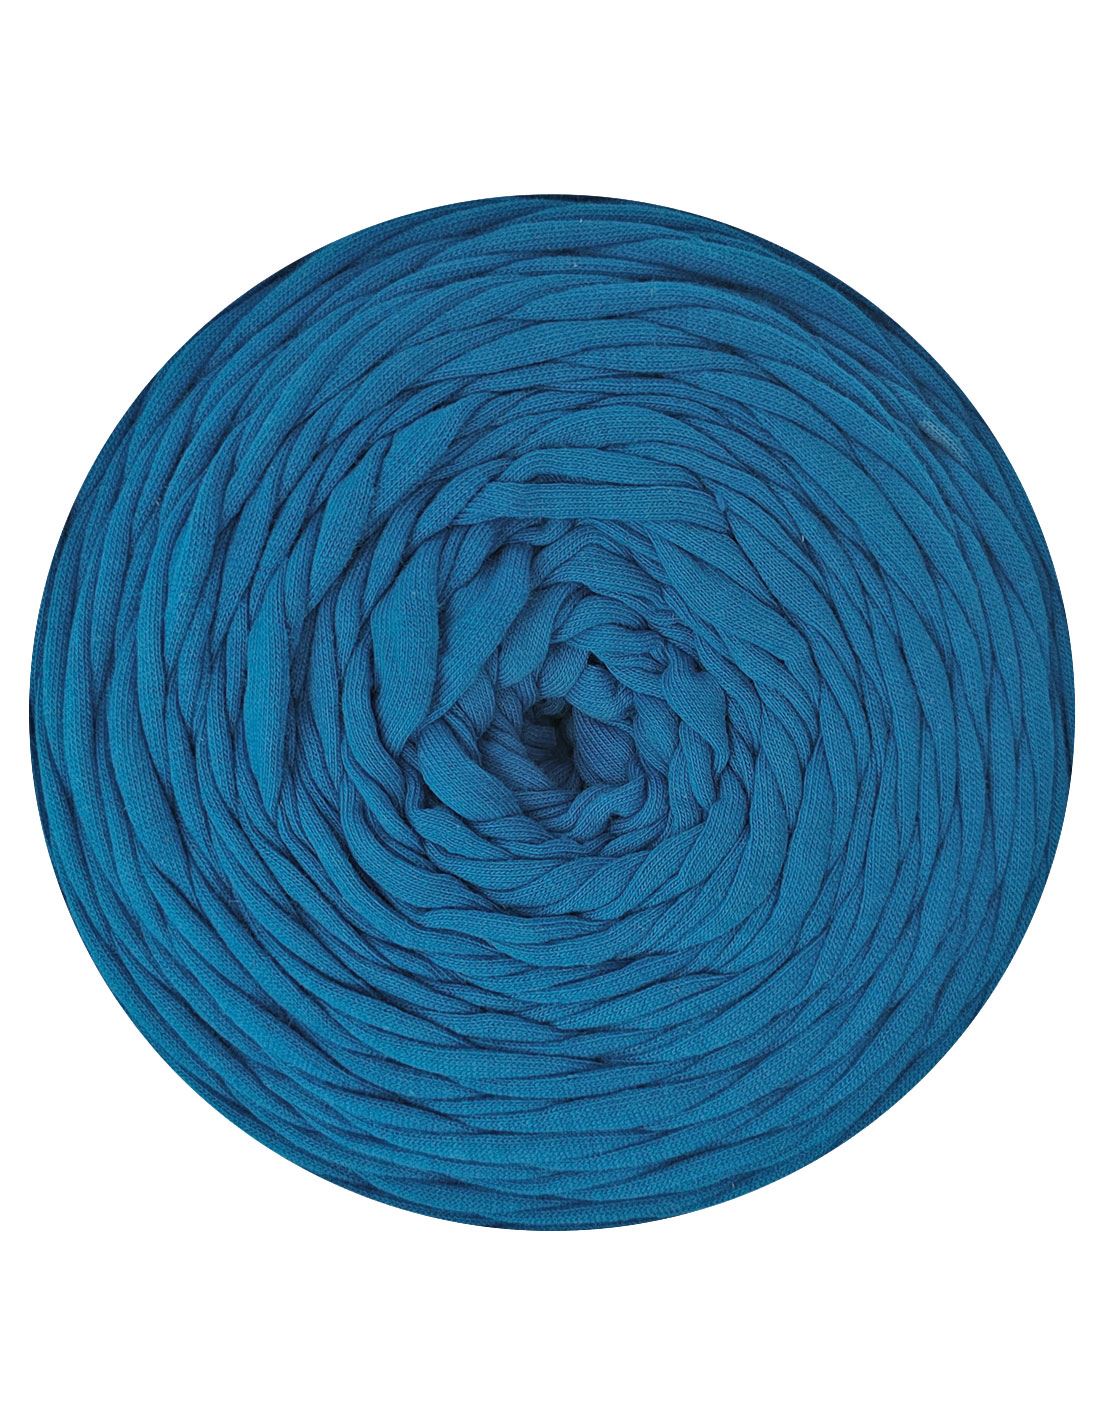 Blue t-shirt yarn by Rescue Yarn (100-120m)